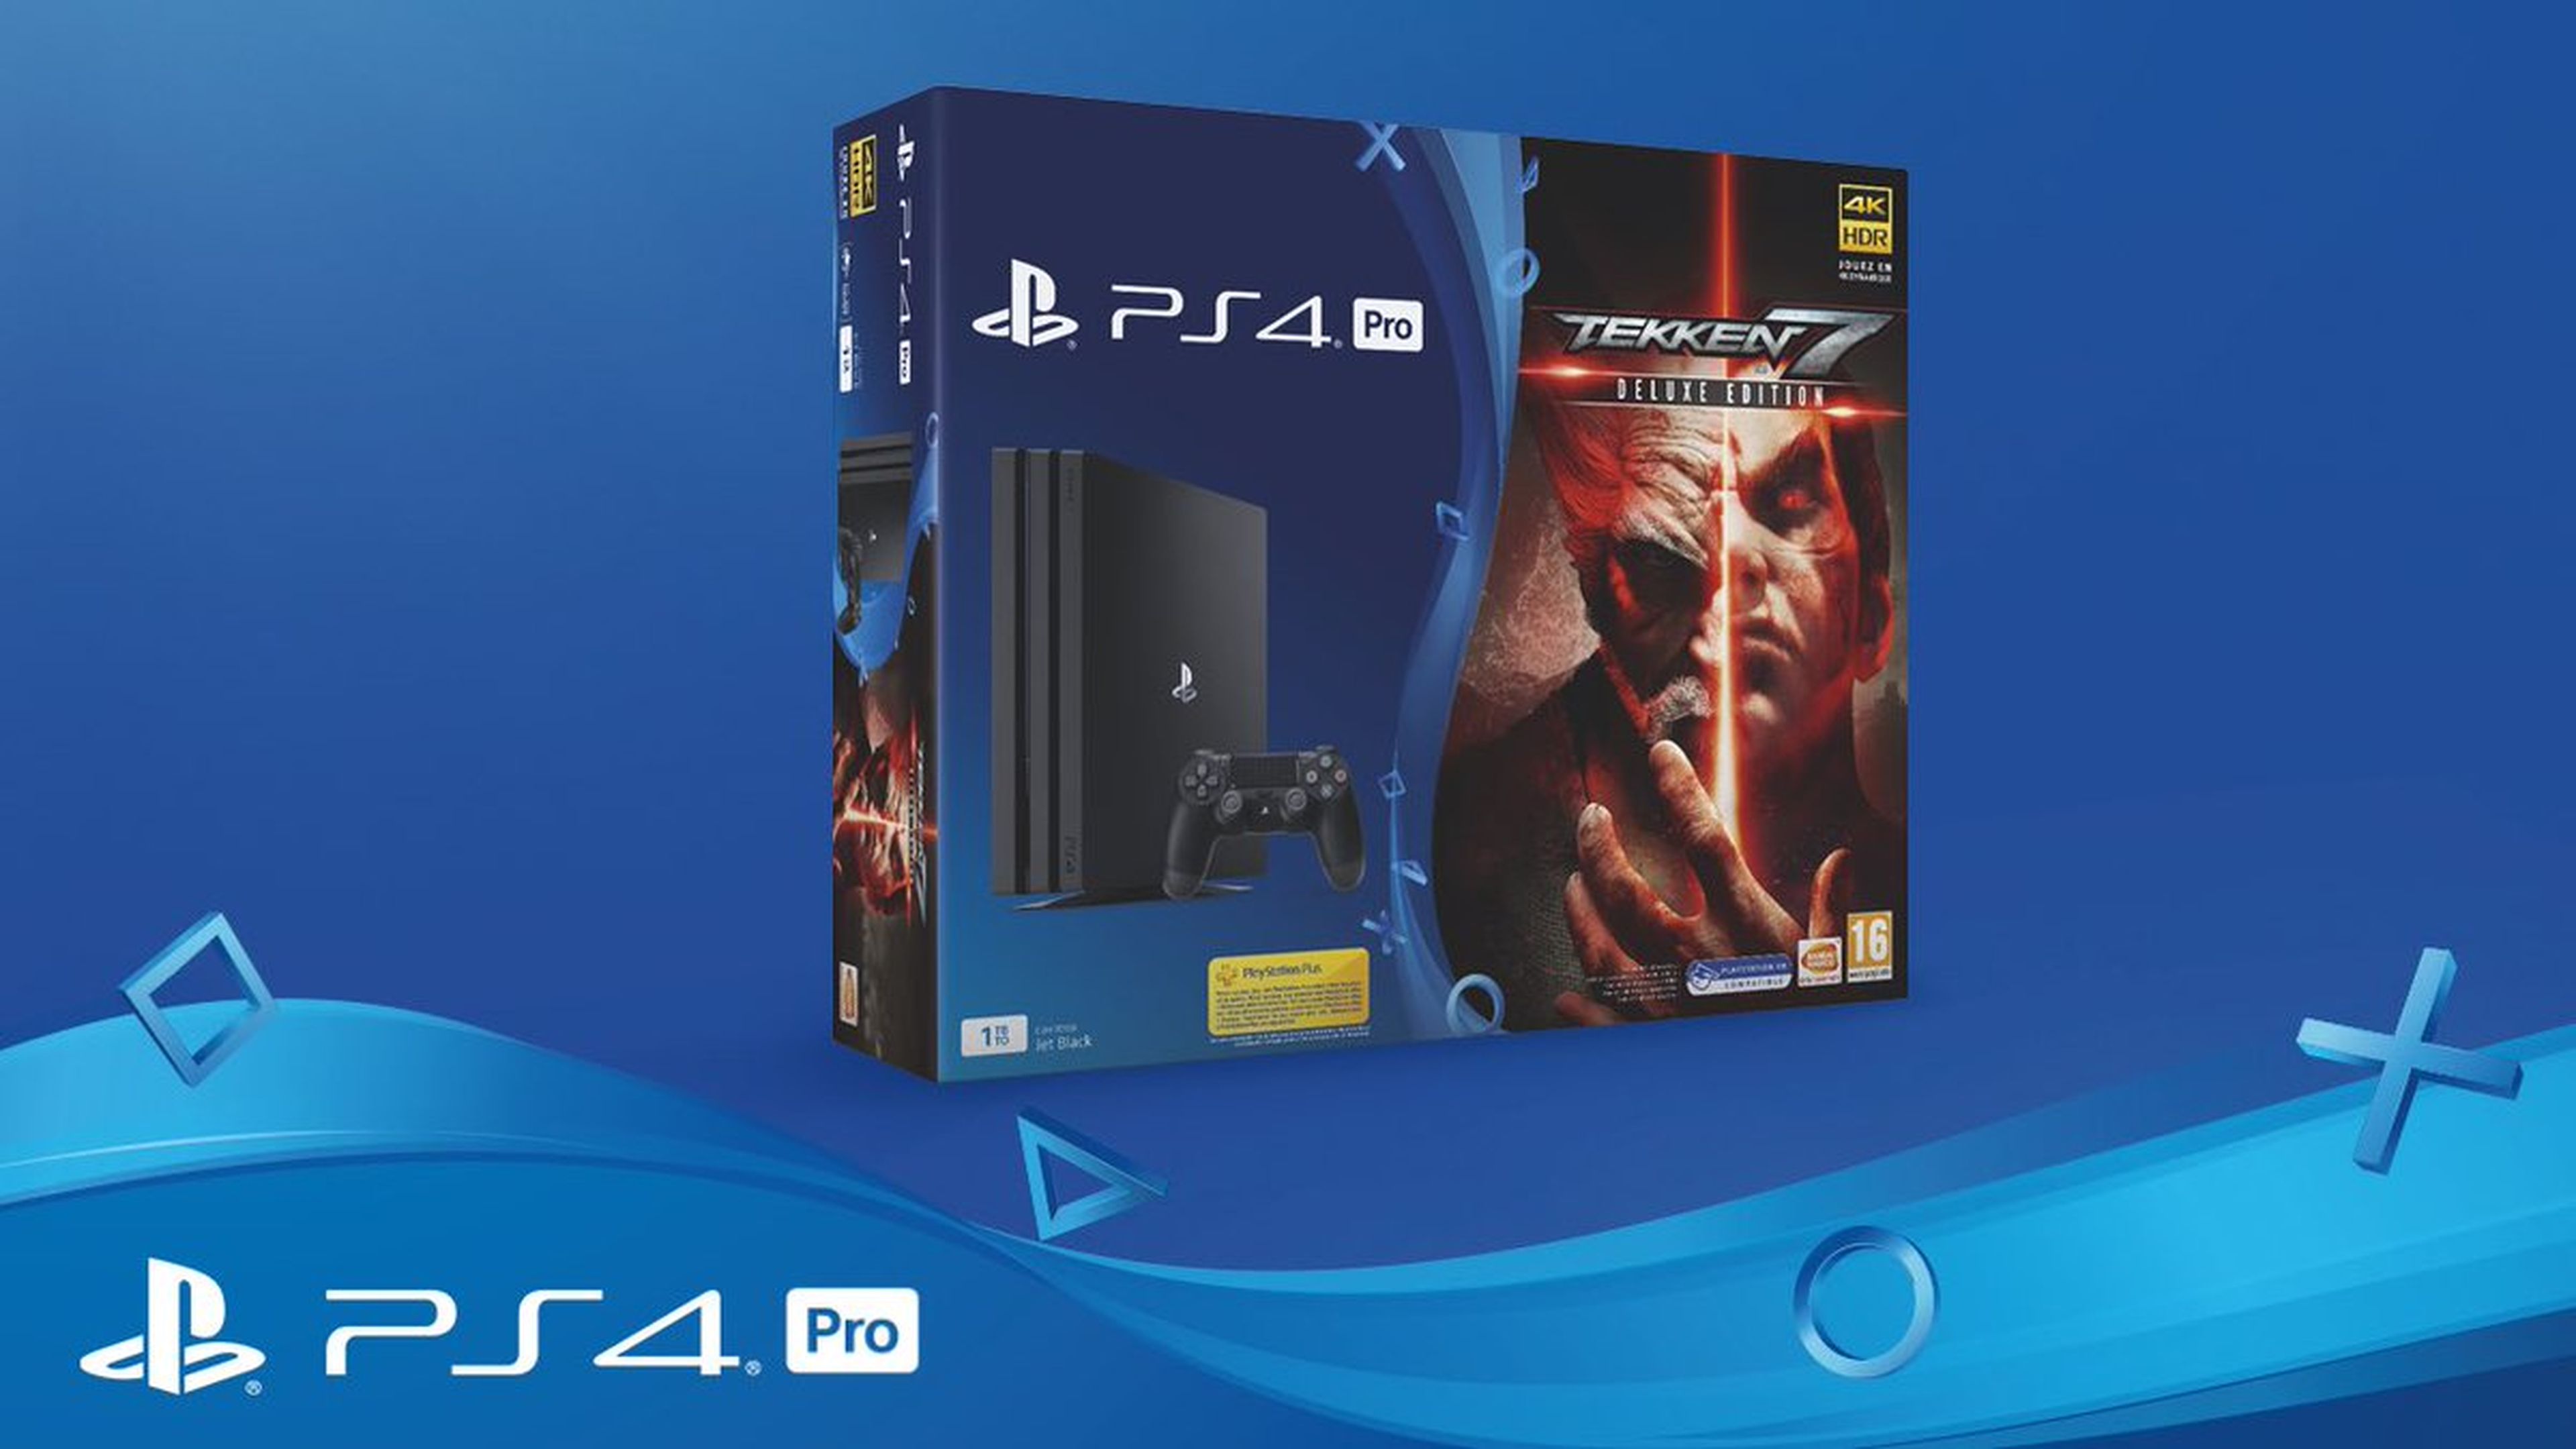 PS4 Pro + Tekken 7